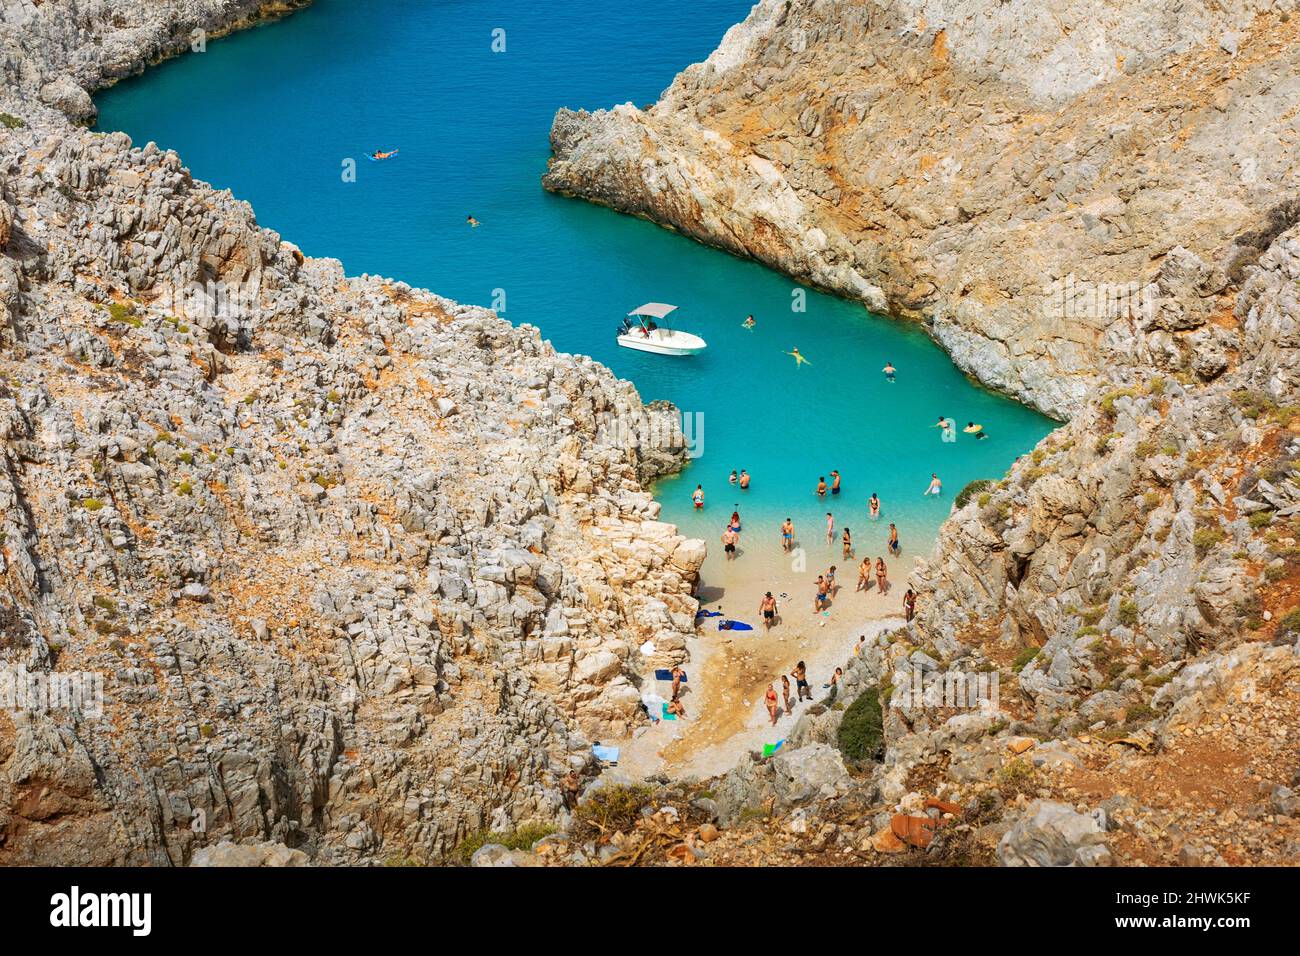 Vue magique au-dessus de la plage de Seitan Limania avec les touristes appréciant leur journée, Crète, Grèce Banque D'Images